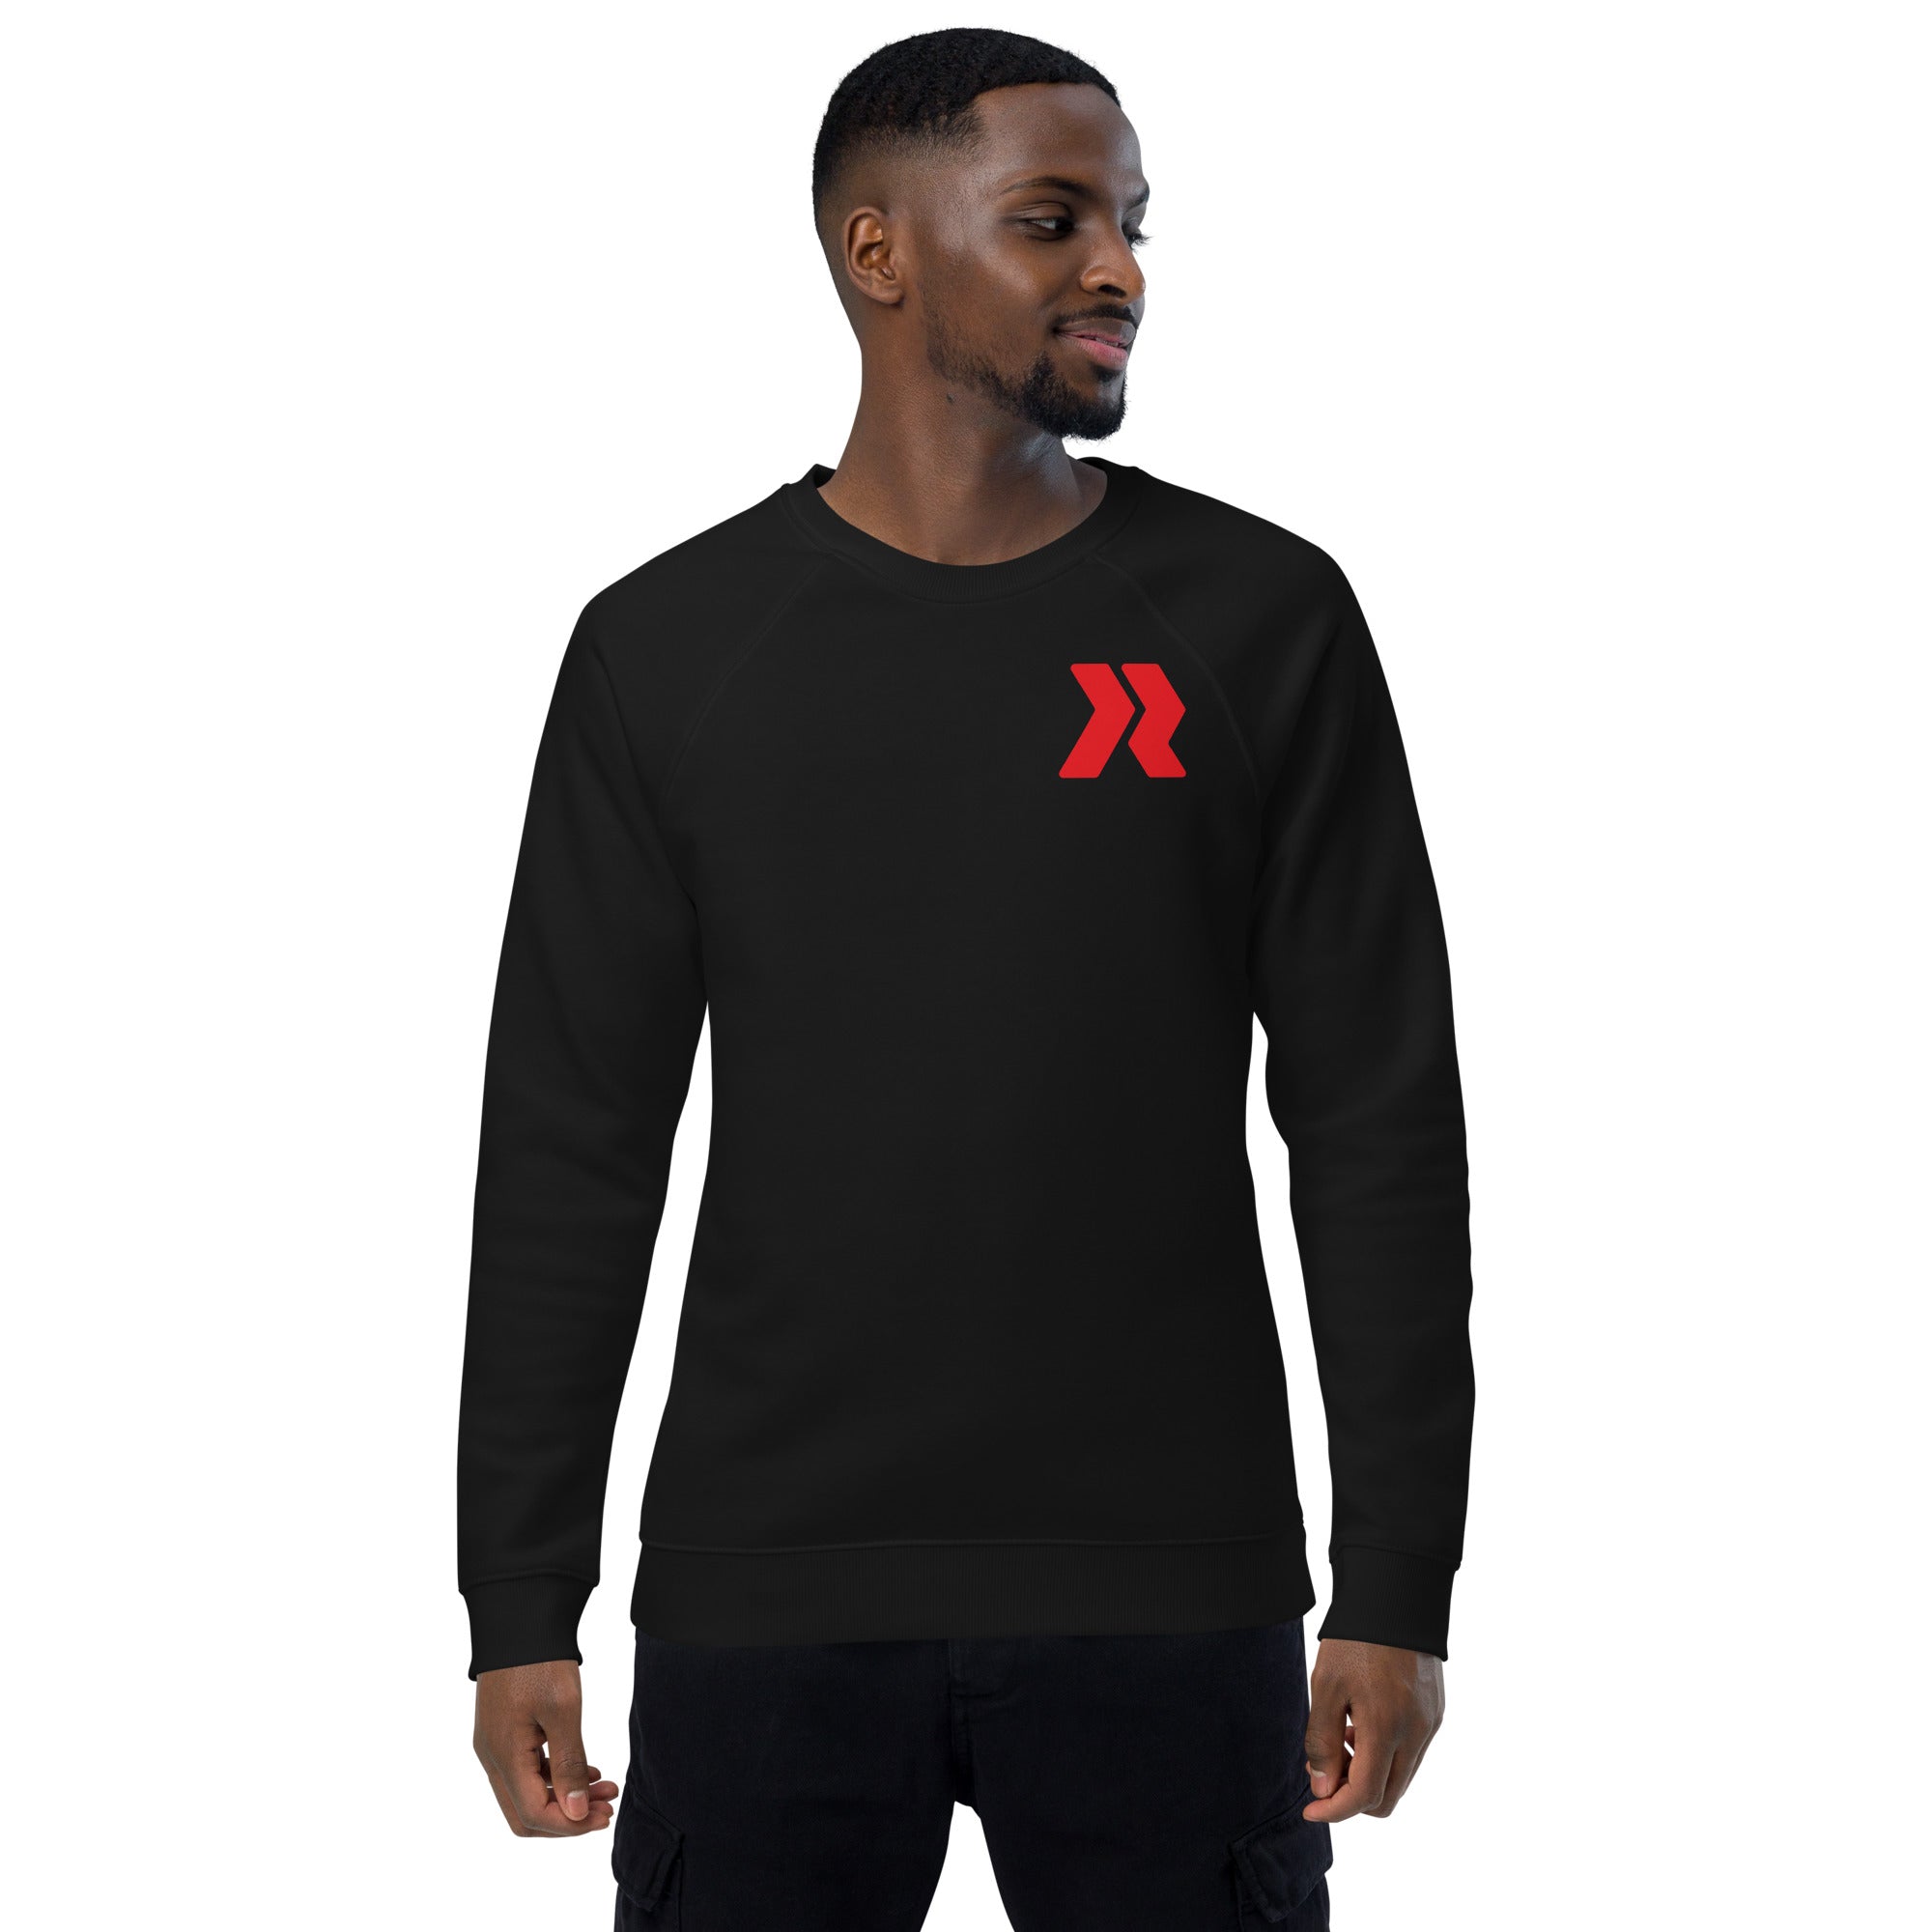 James River Expy Logo R - R/W - Black Unisex organic raglan sweatshirt